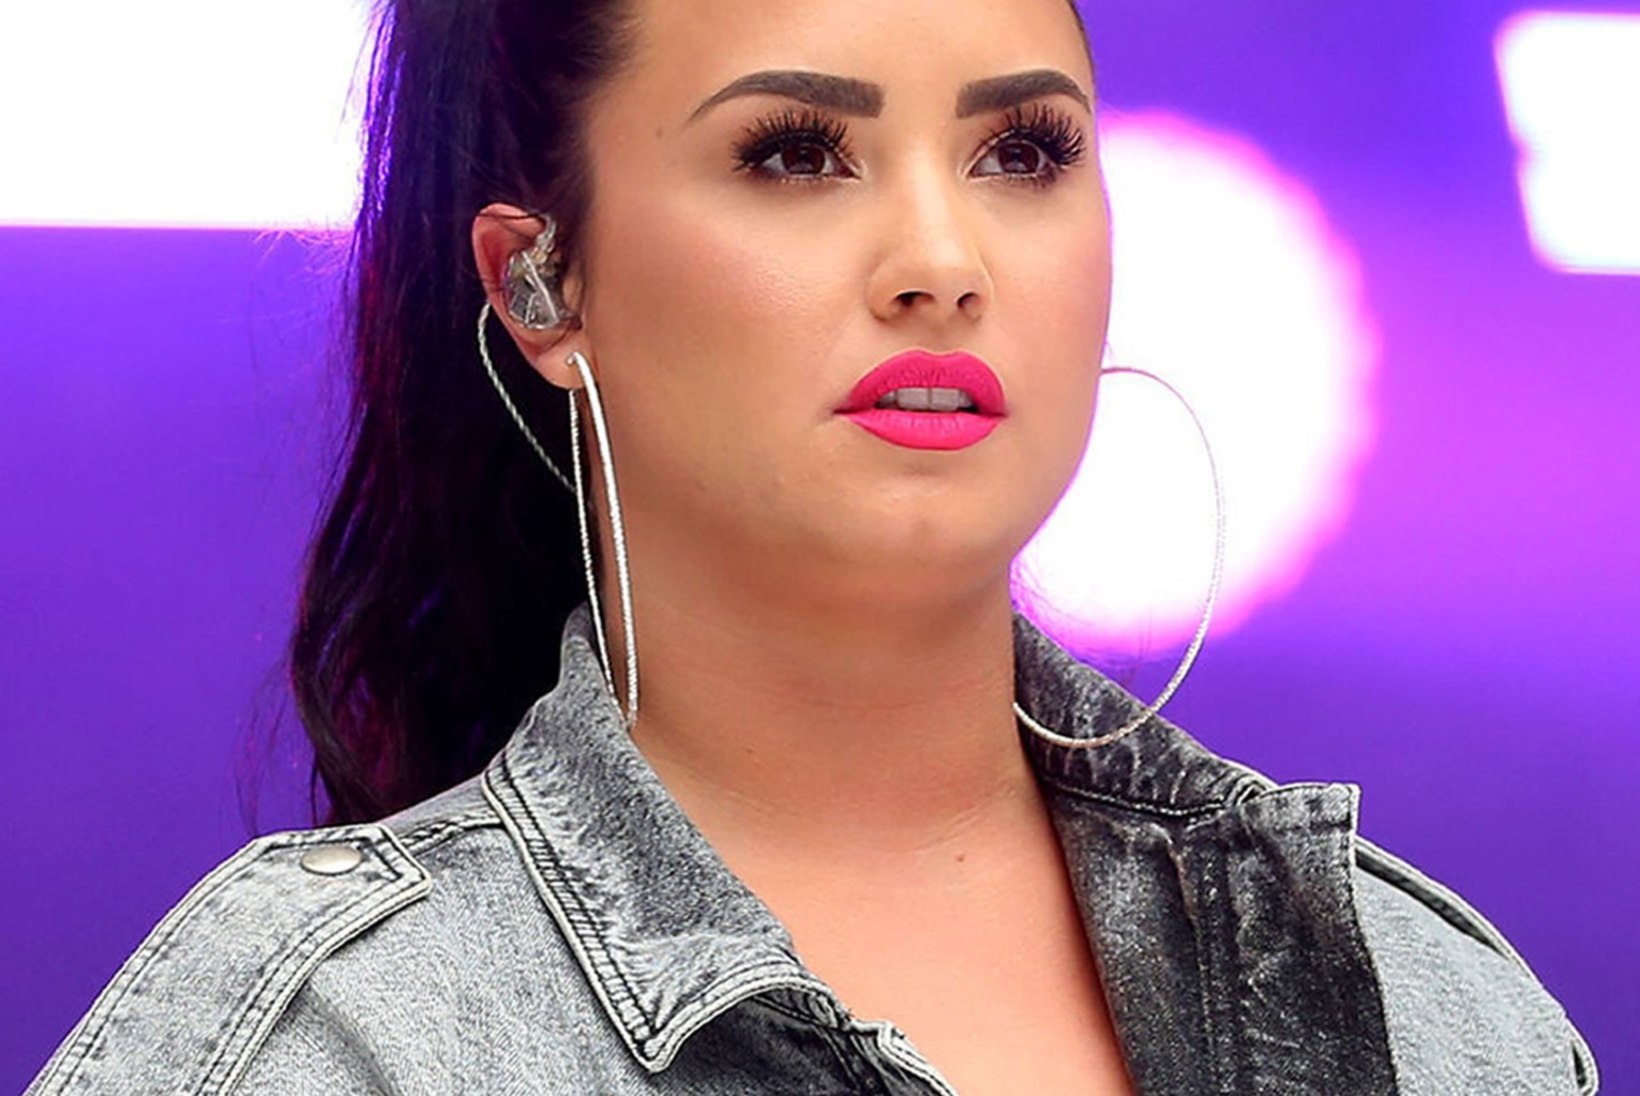 VAID KAKS KUUD: Demi Lovato katkestas ootamatult kihluse